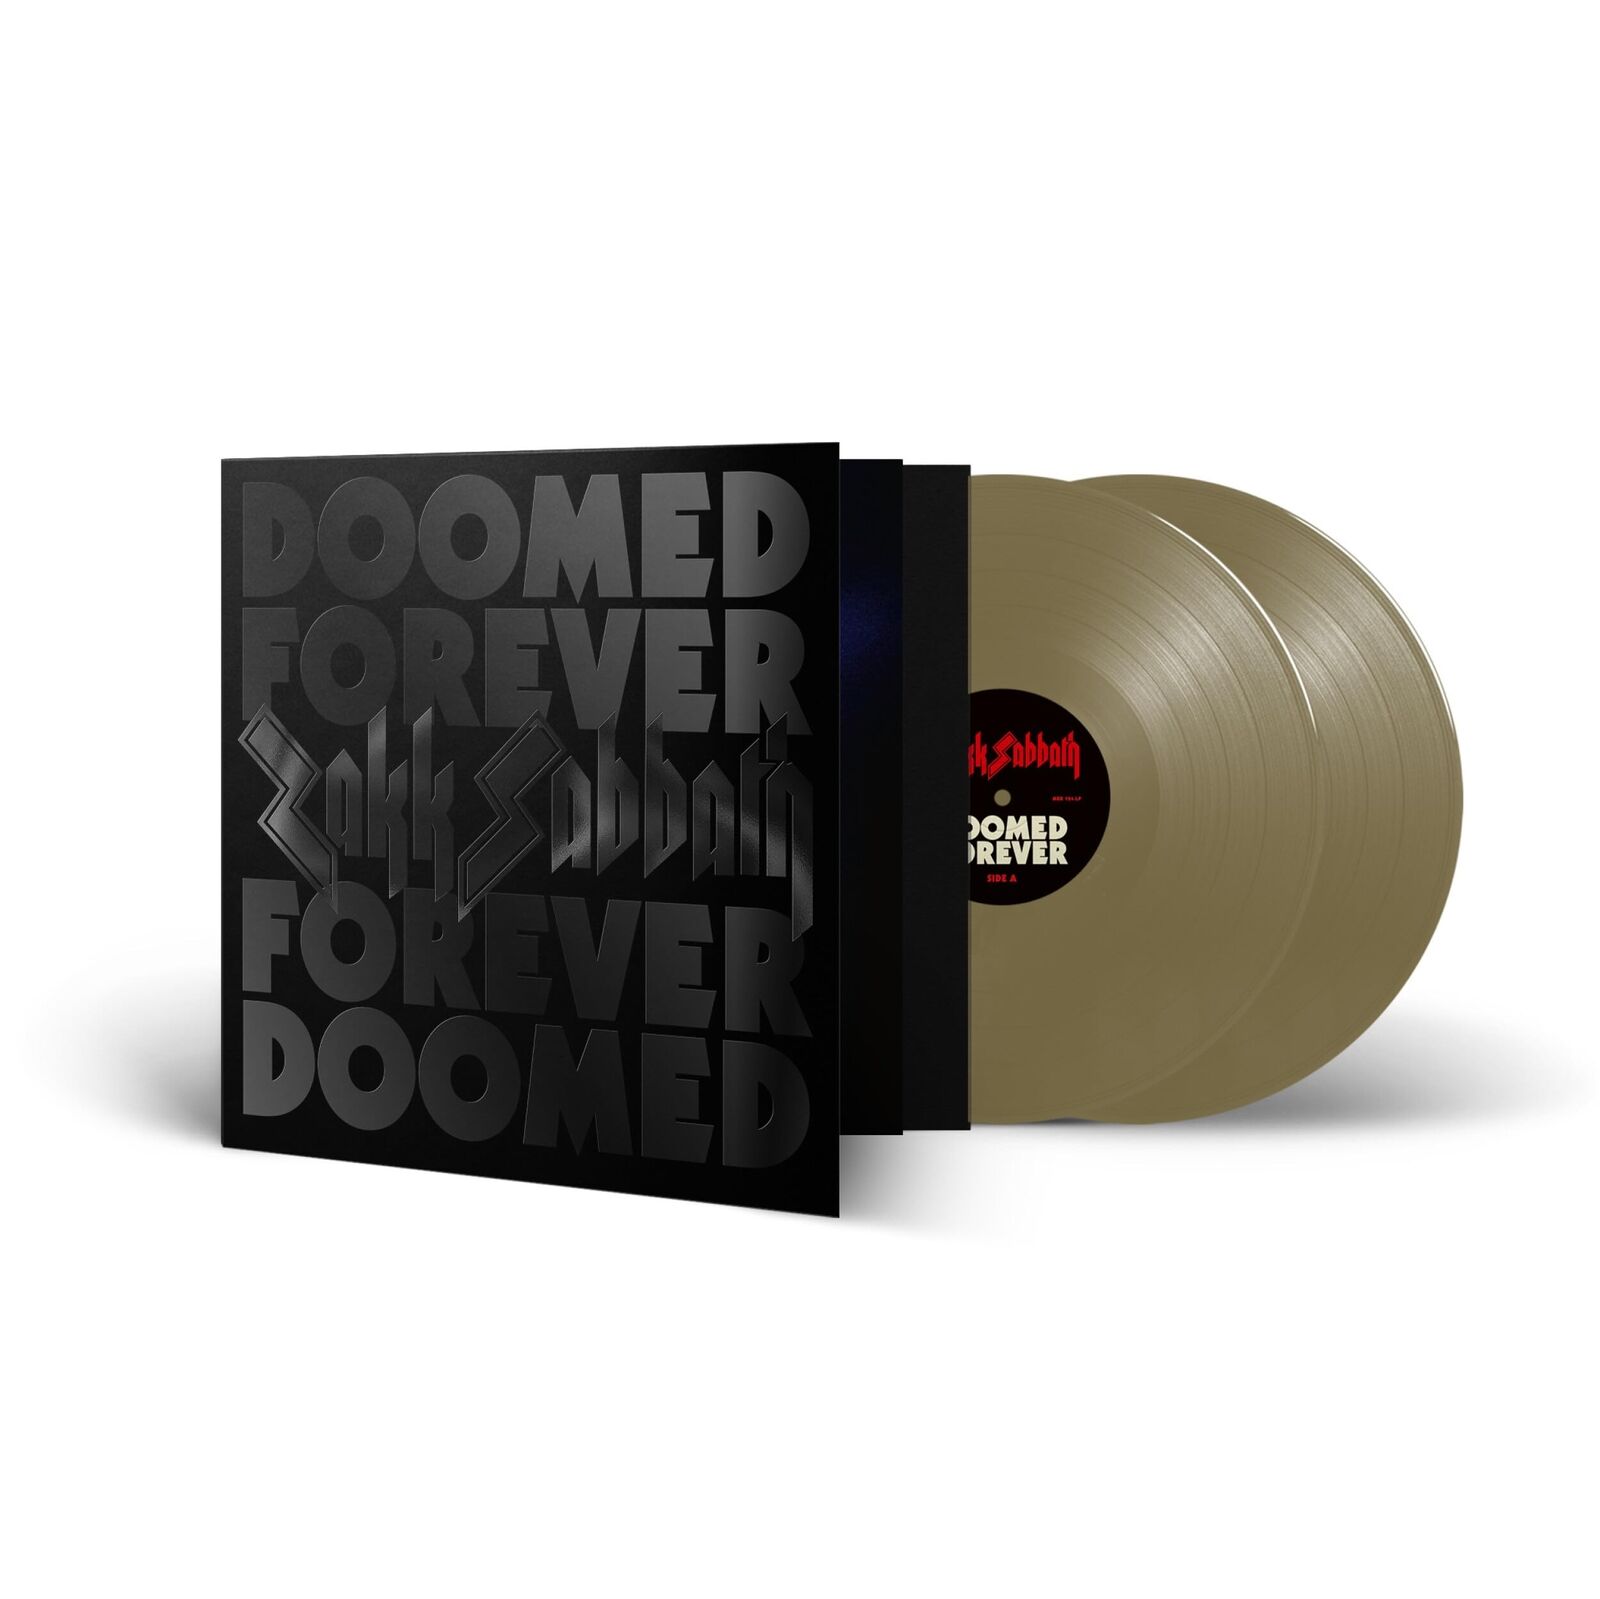 Zakk Sabbath Doomed Forever Forever Doomed (Vinyl) (UK IMPORT)